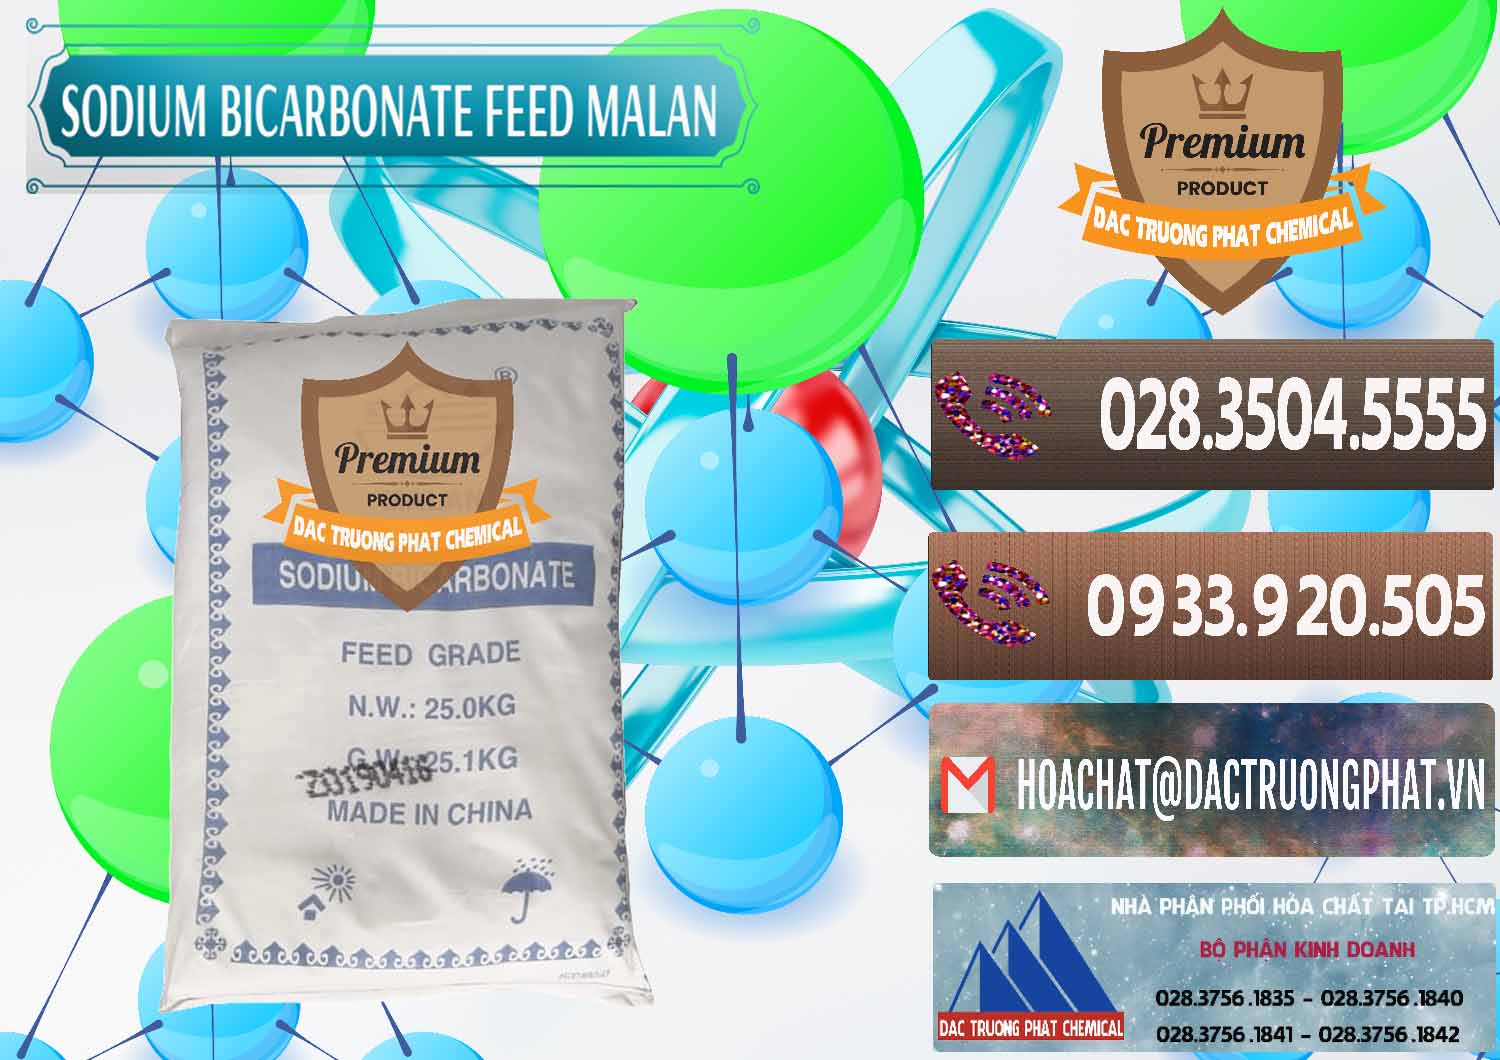 Cty chuyên bán và cung cấp Sodium Bicarbonate – Bicar NaHCO3 Feed Grade Malan Trung Quốc China - 0262 - Nhà cung cấp & kinh doanh hóa chất tại TP.HCM - hoachatviet.net